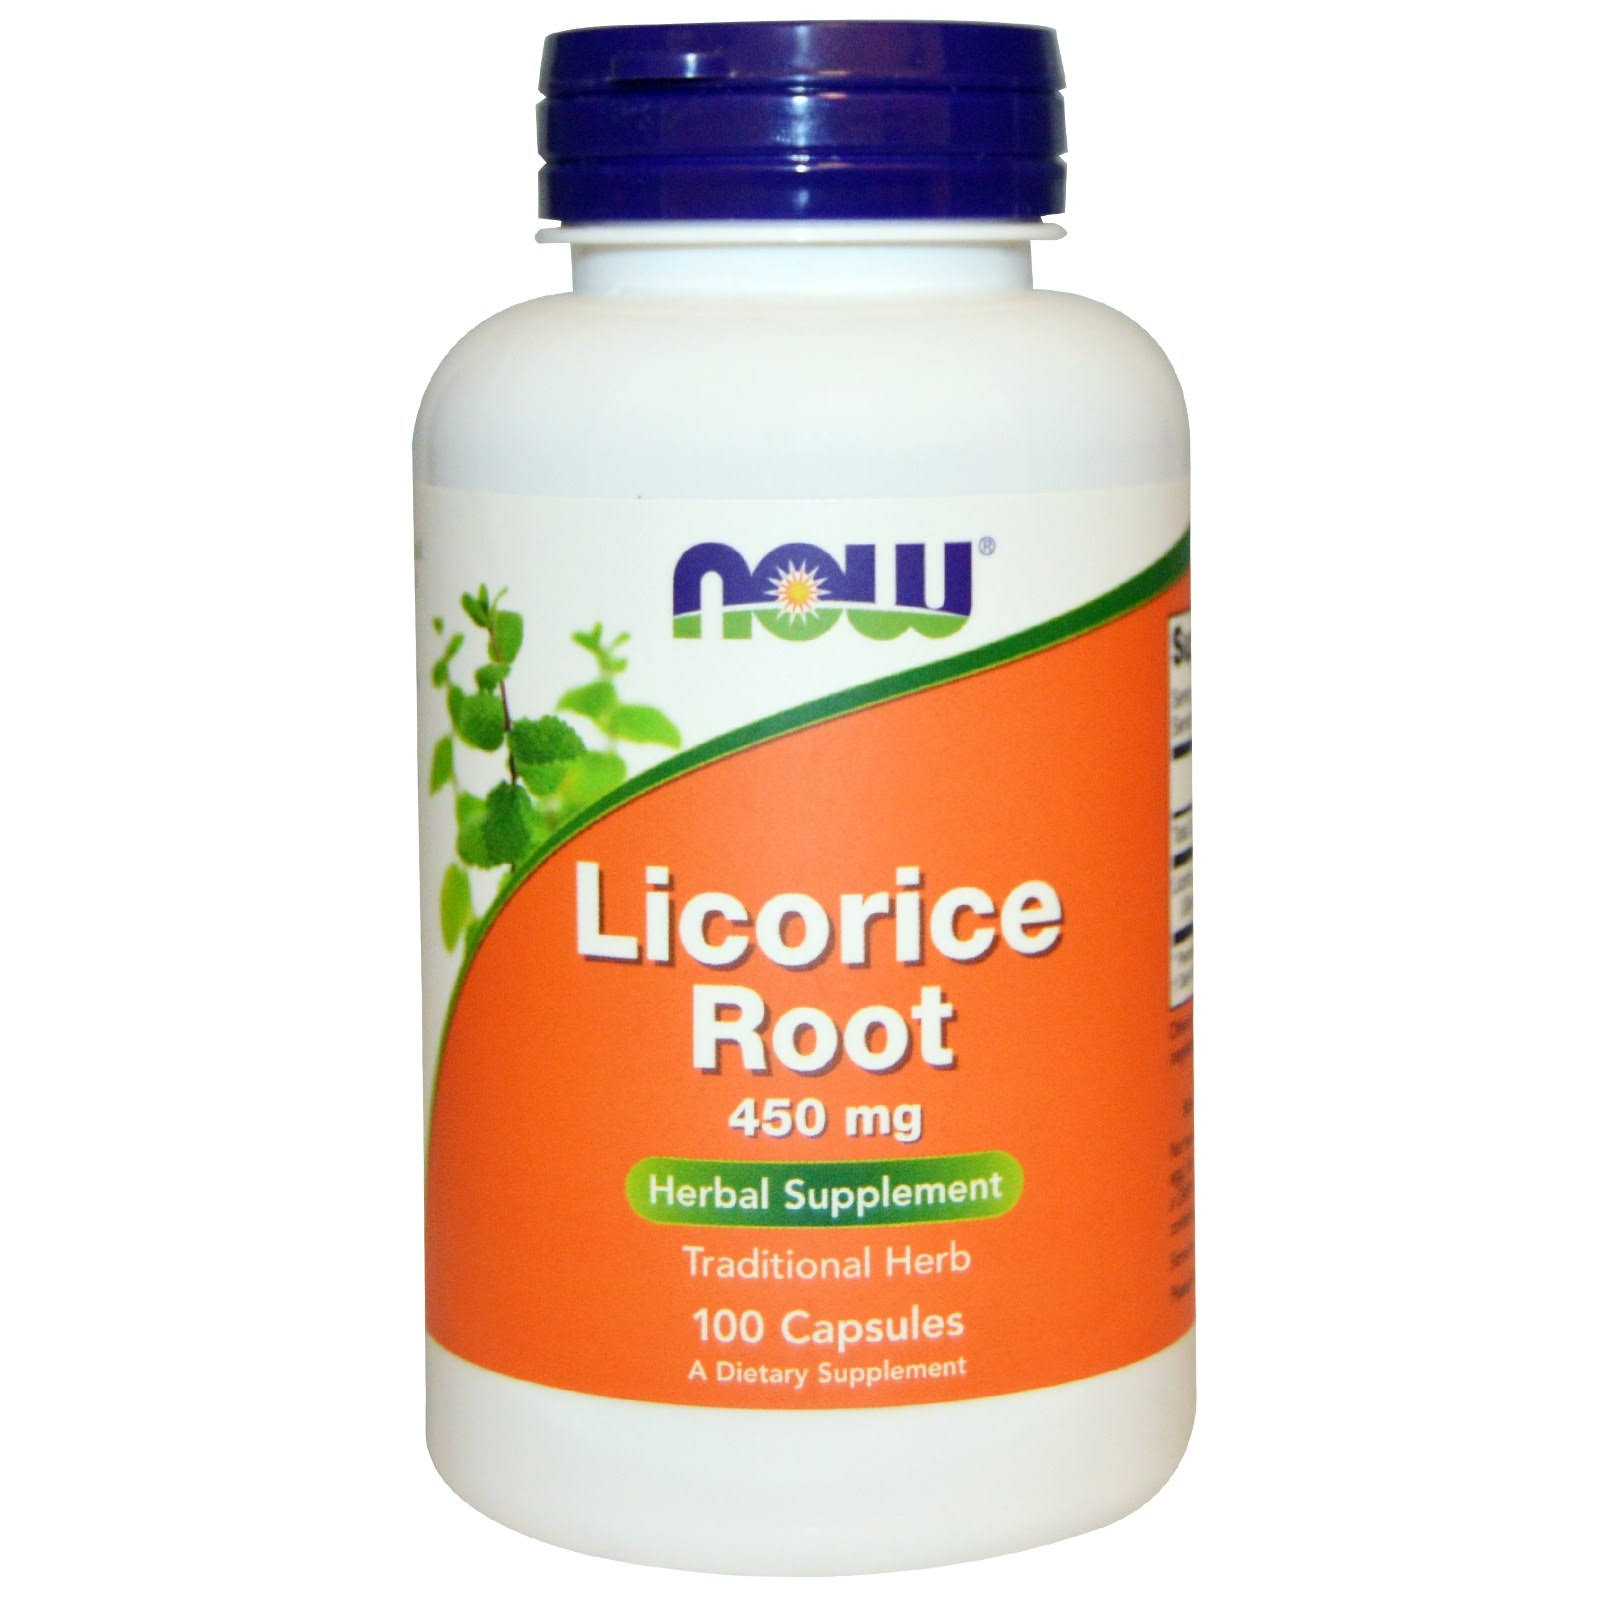 Now Licorice Root